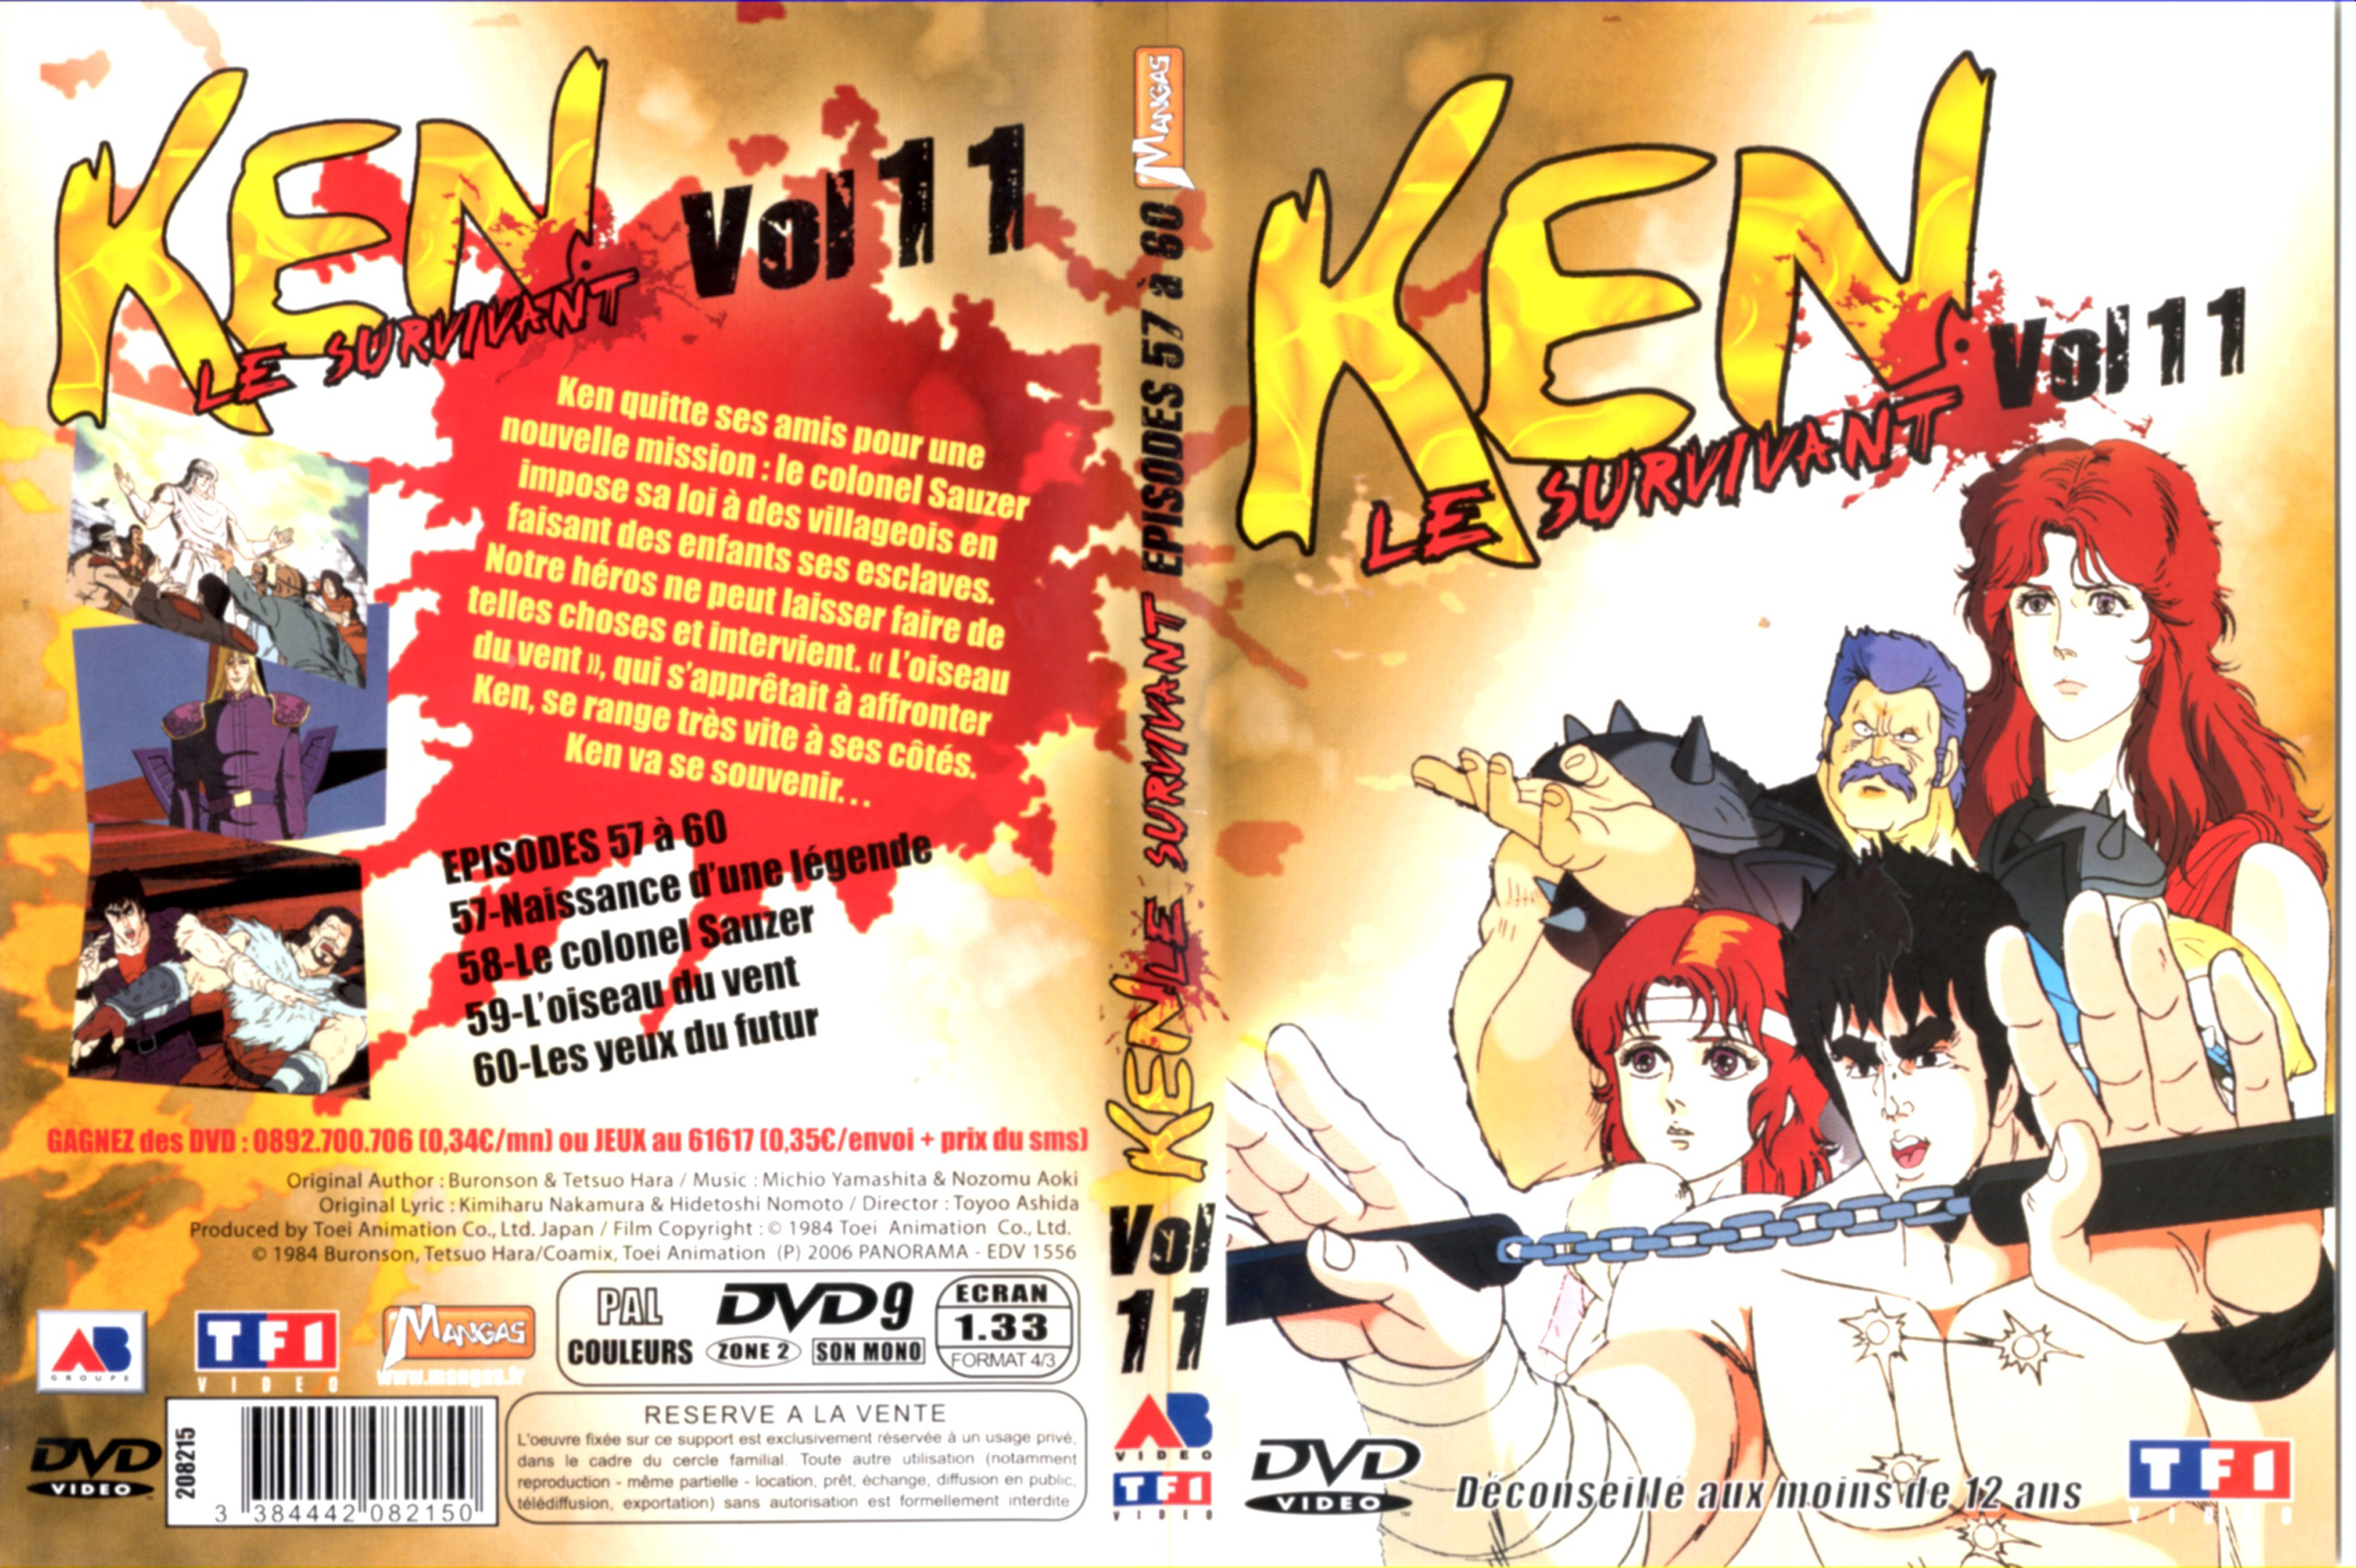 Jaquette DVD Ken le survivant vol 11